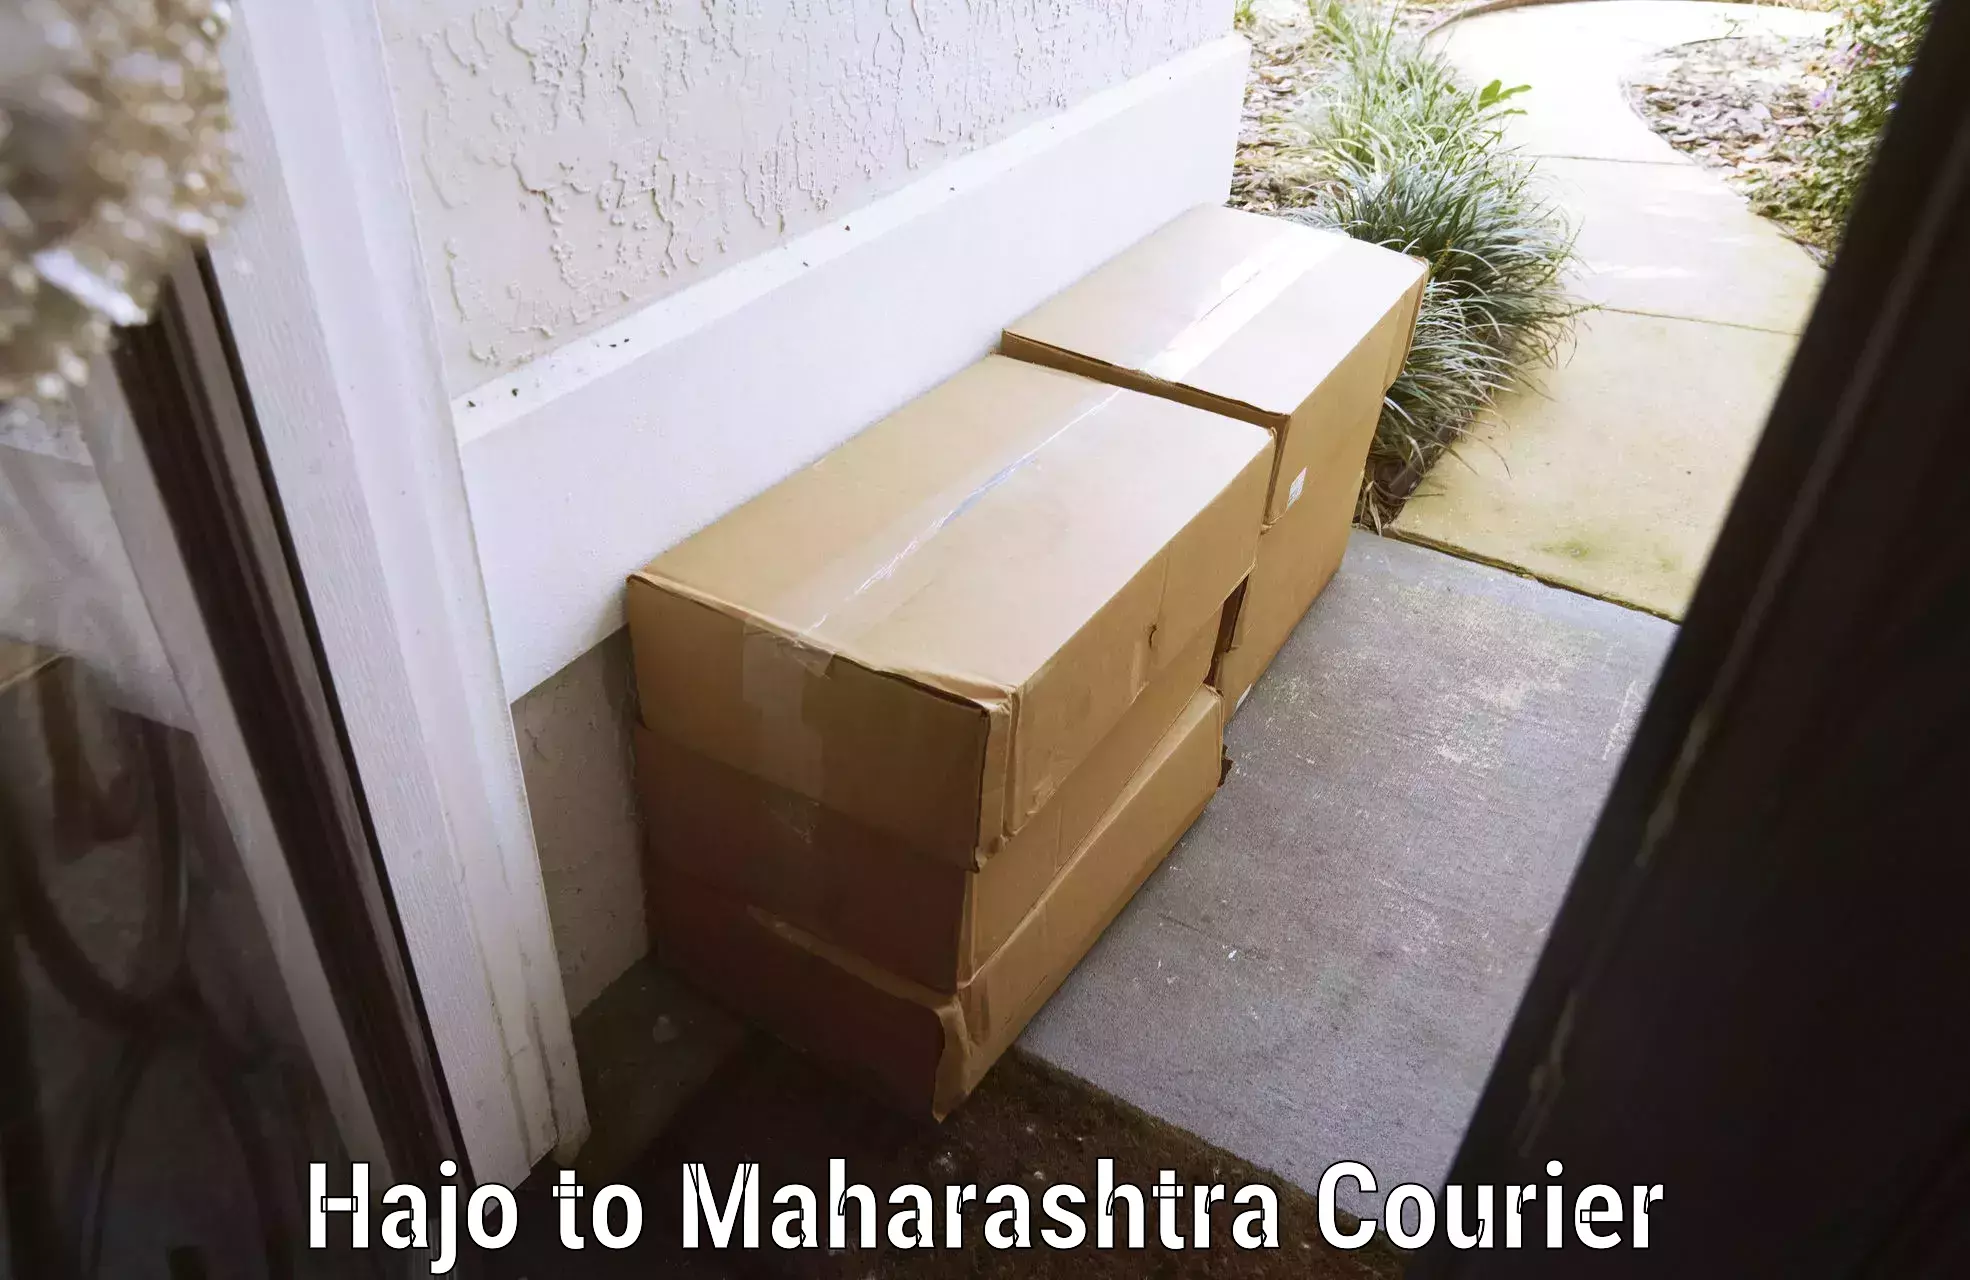 Luggage transfer service Hajo to Maharashtra